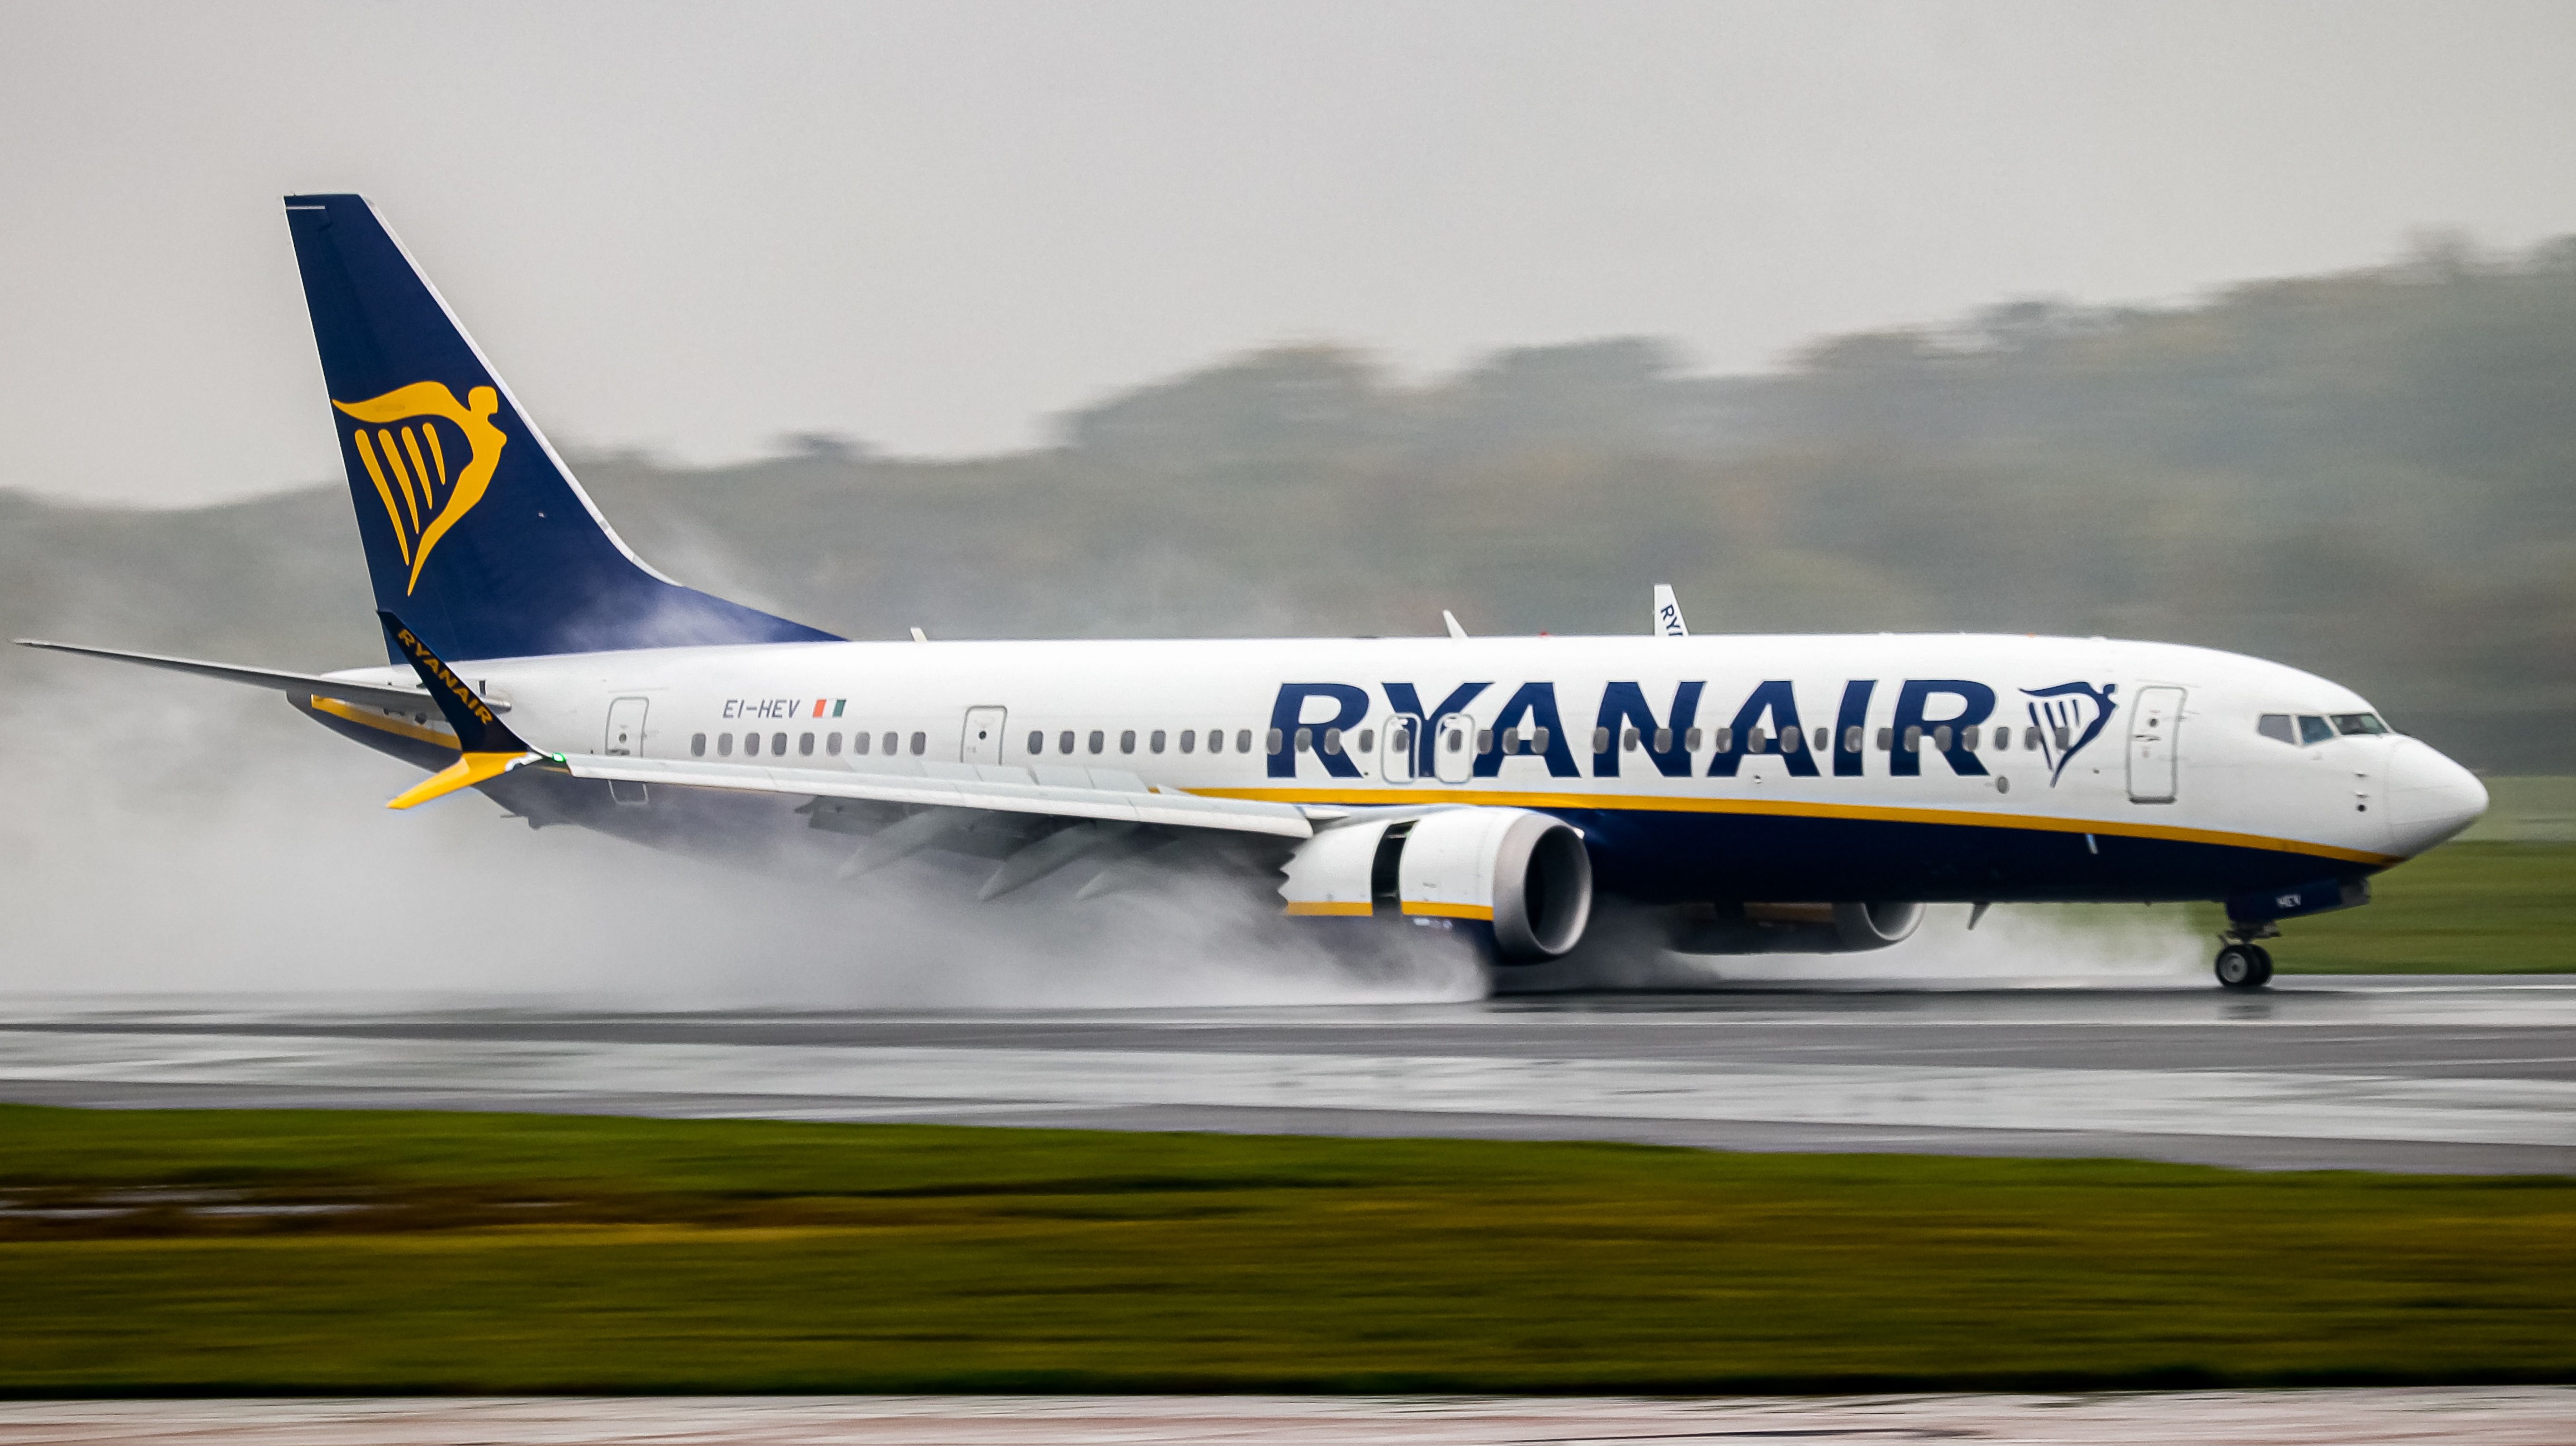 Ryanair Boeing 737 MAX landing on a wet runway